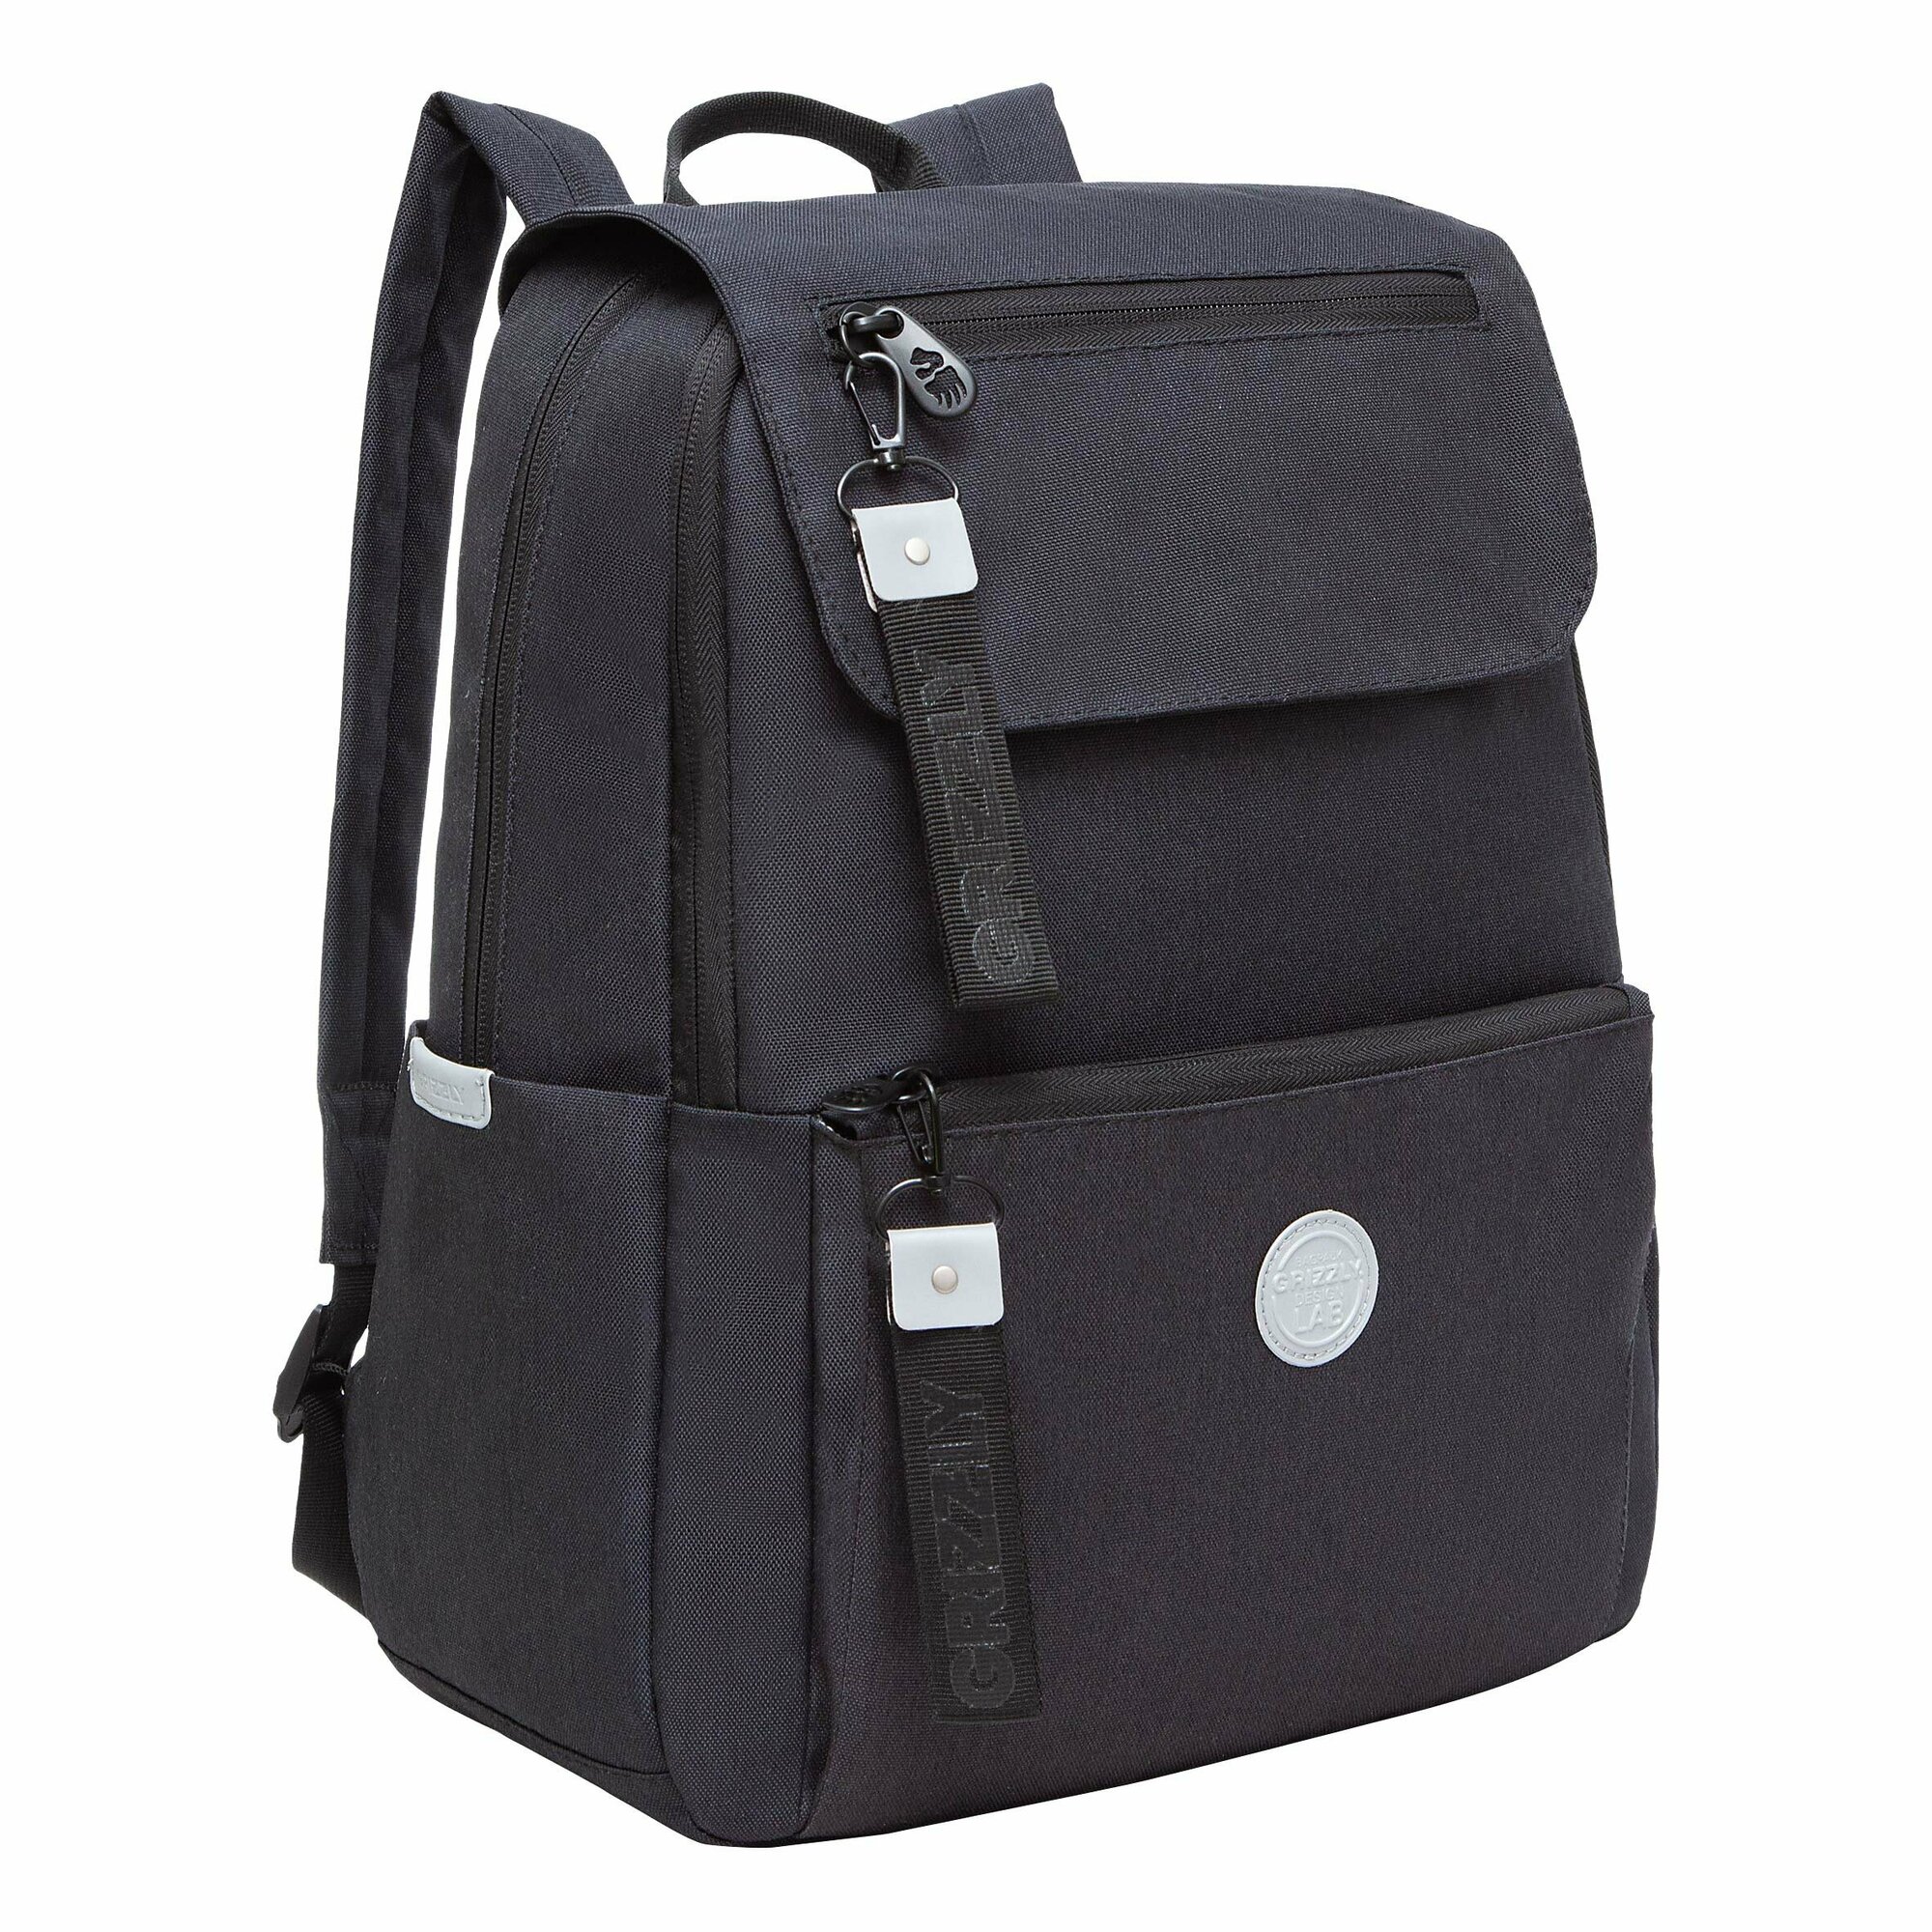 Рюкзак молодежный GRIZZLY с карманом для ноутбука 13", потайным карманом, клапан, для девочки, женский RXL-325-1/3